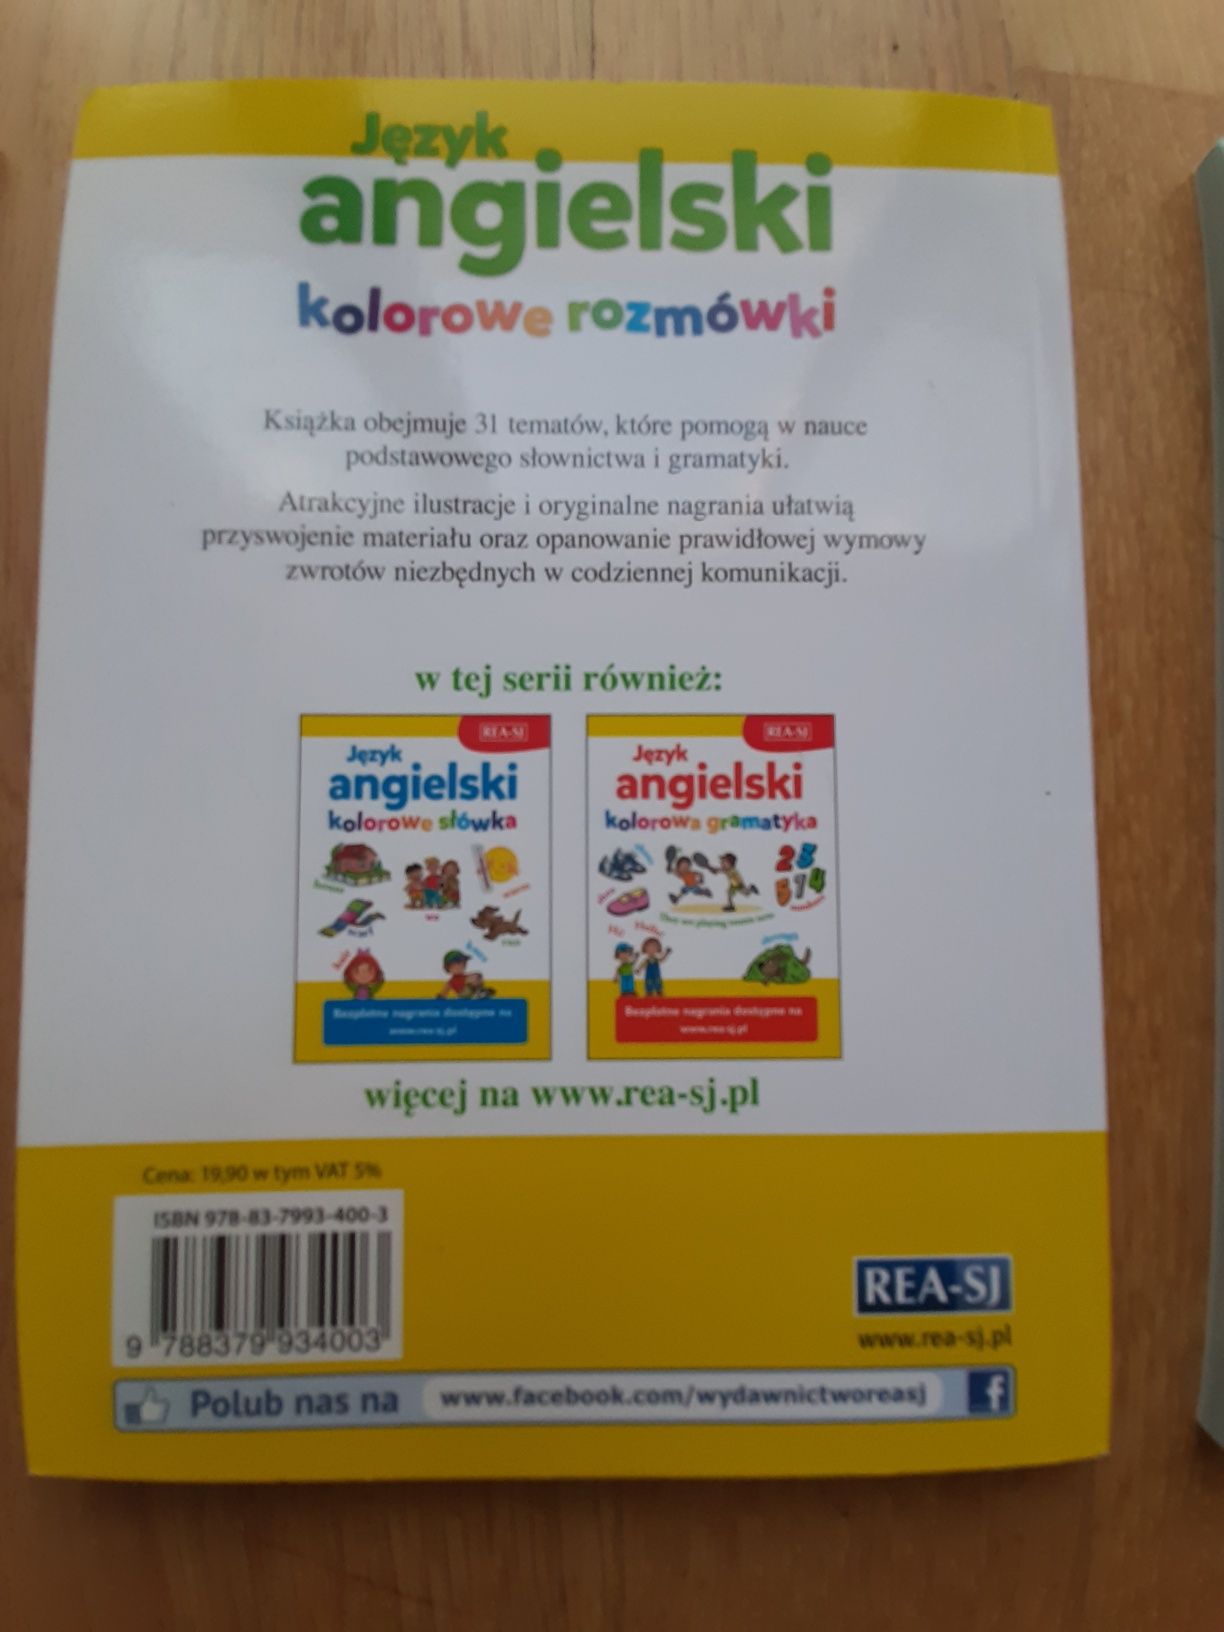 Język angielski dla dzieci cał. 22 zł (LSDP7)